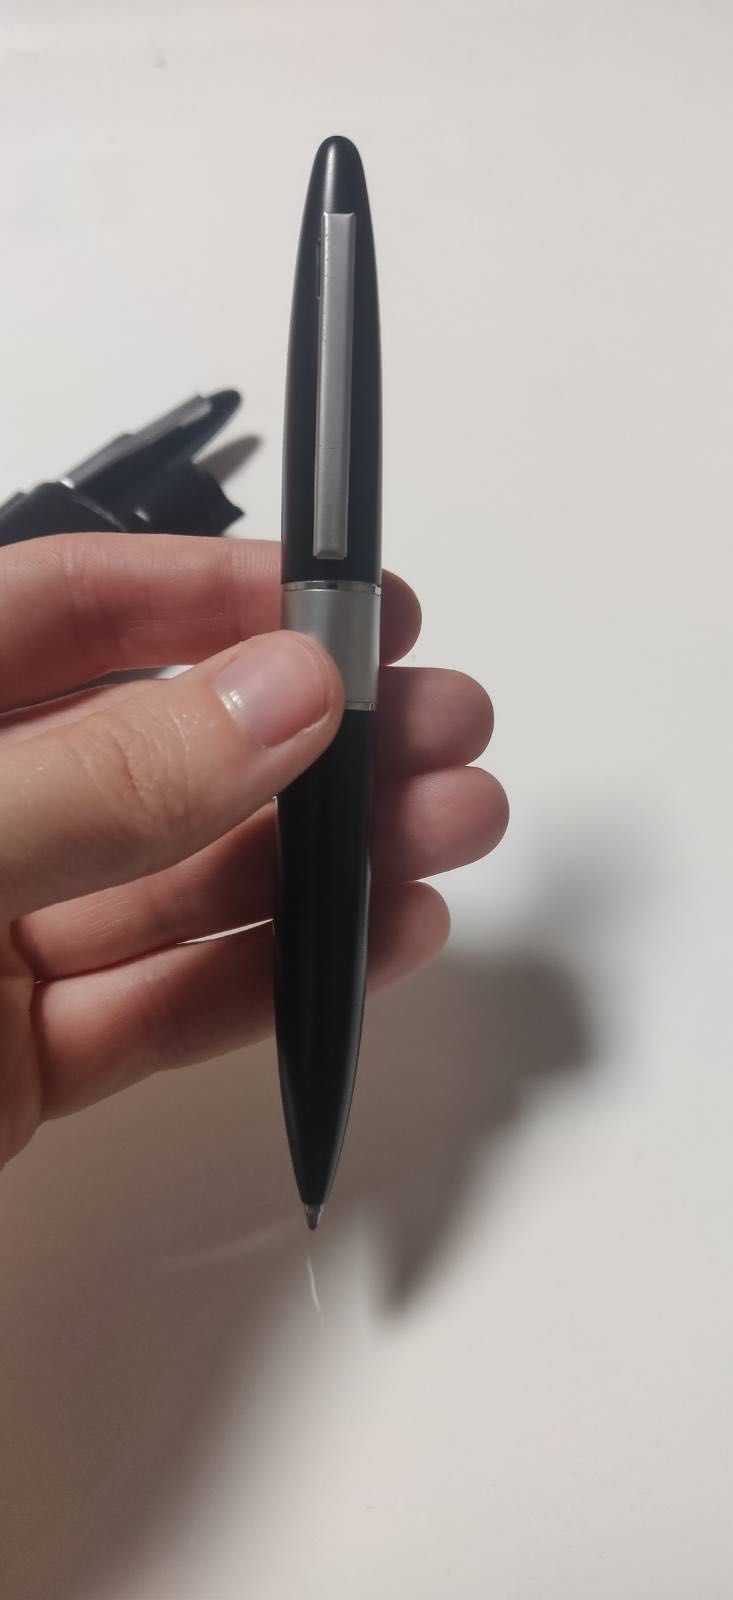 Conjunto de Esferográfica e caneta de tinteiro / fountain pen - NOVO